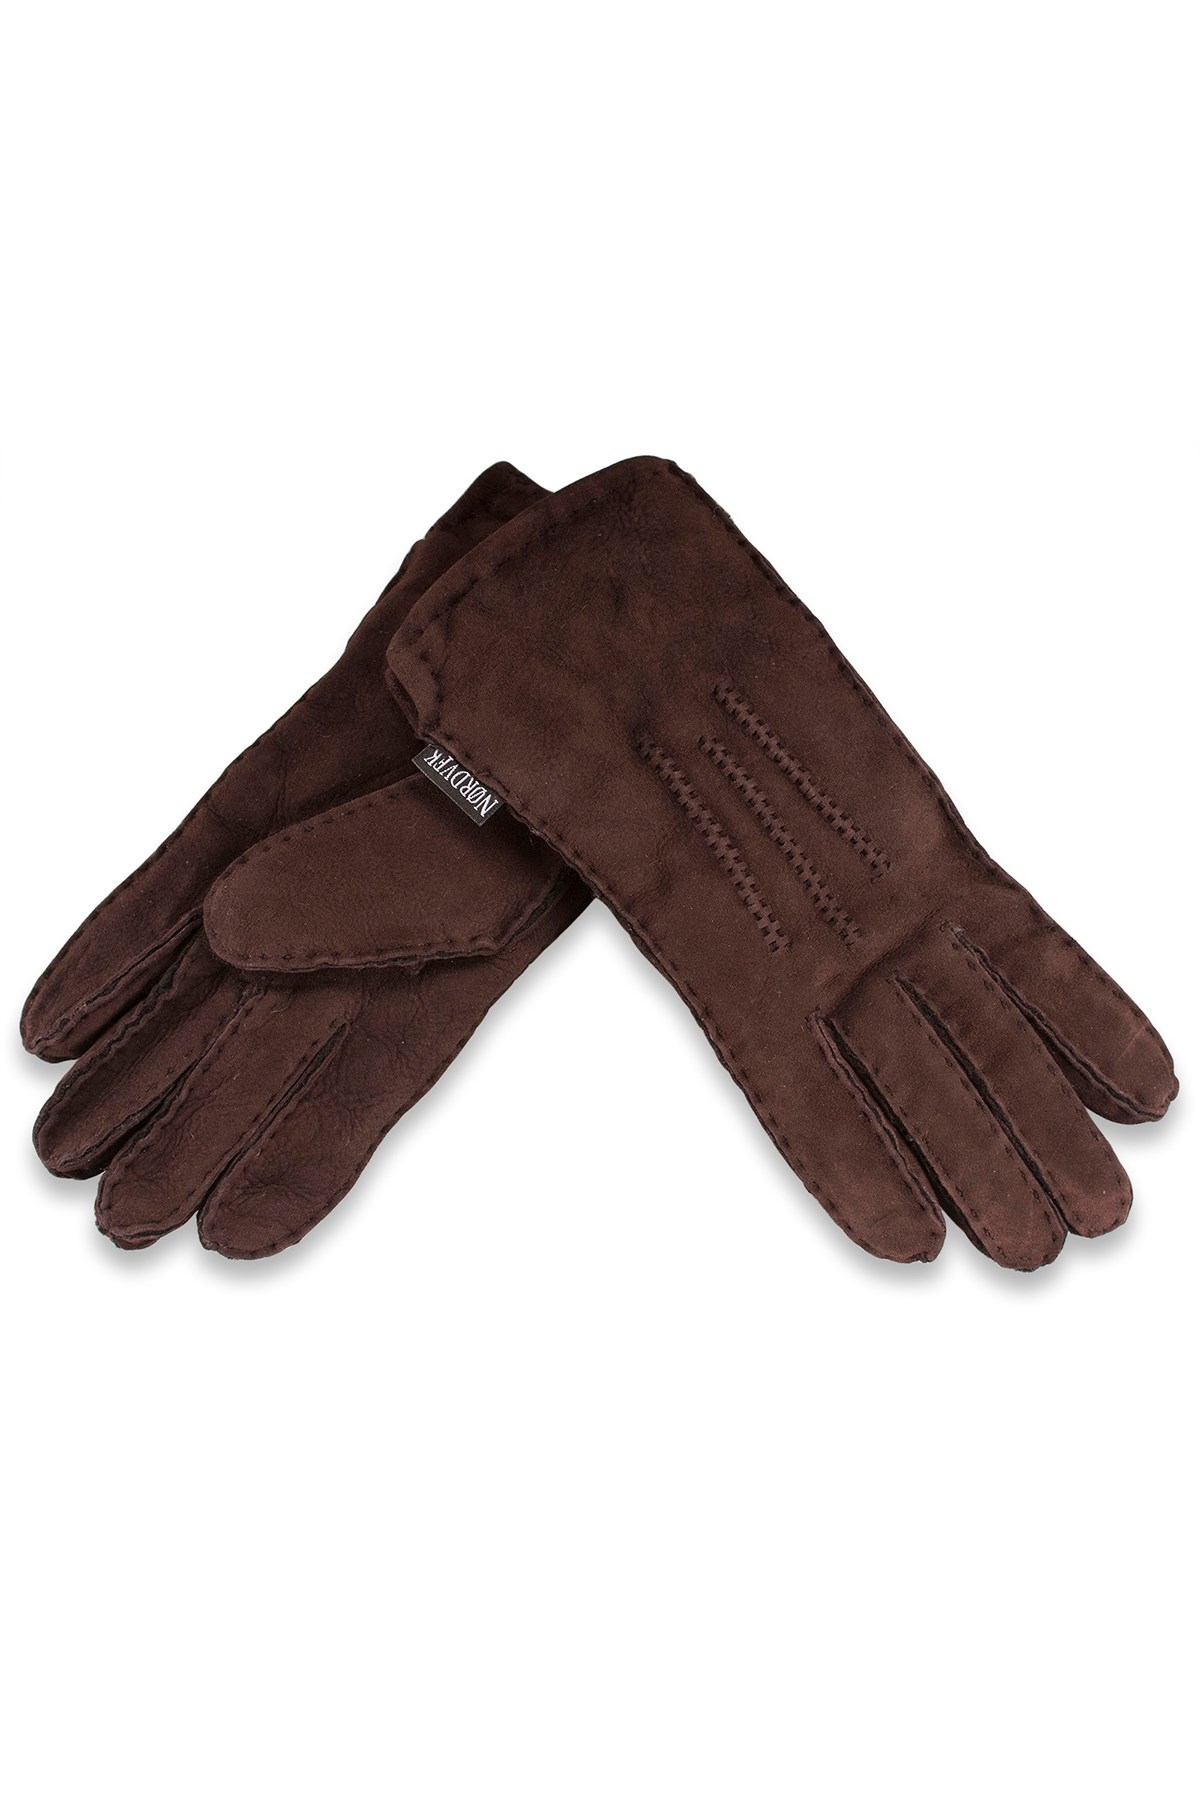 Womens 3 Point Sheepskin Gloves -